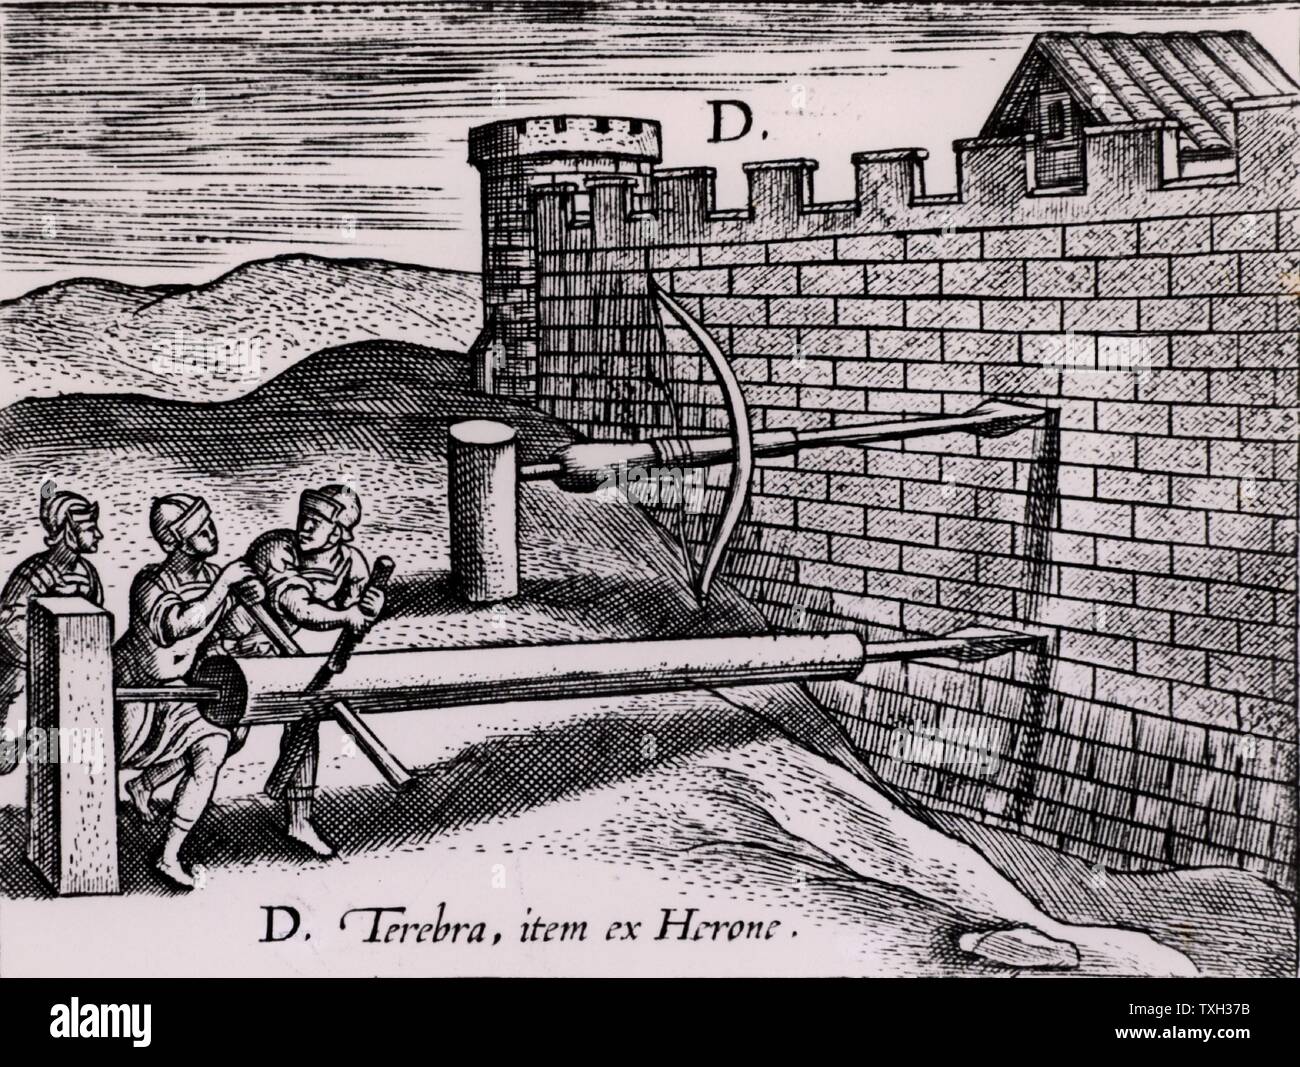 Due forme coclea utilizzato dai Romani nella guerra d'assedio per forare la parete di una fortezza. Da 'Poliorceticon sive de machinis tormentis telis' da Justus Lipsius (Joost Lips) (Anversa, 1605). Incisione. Foto Stock